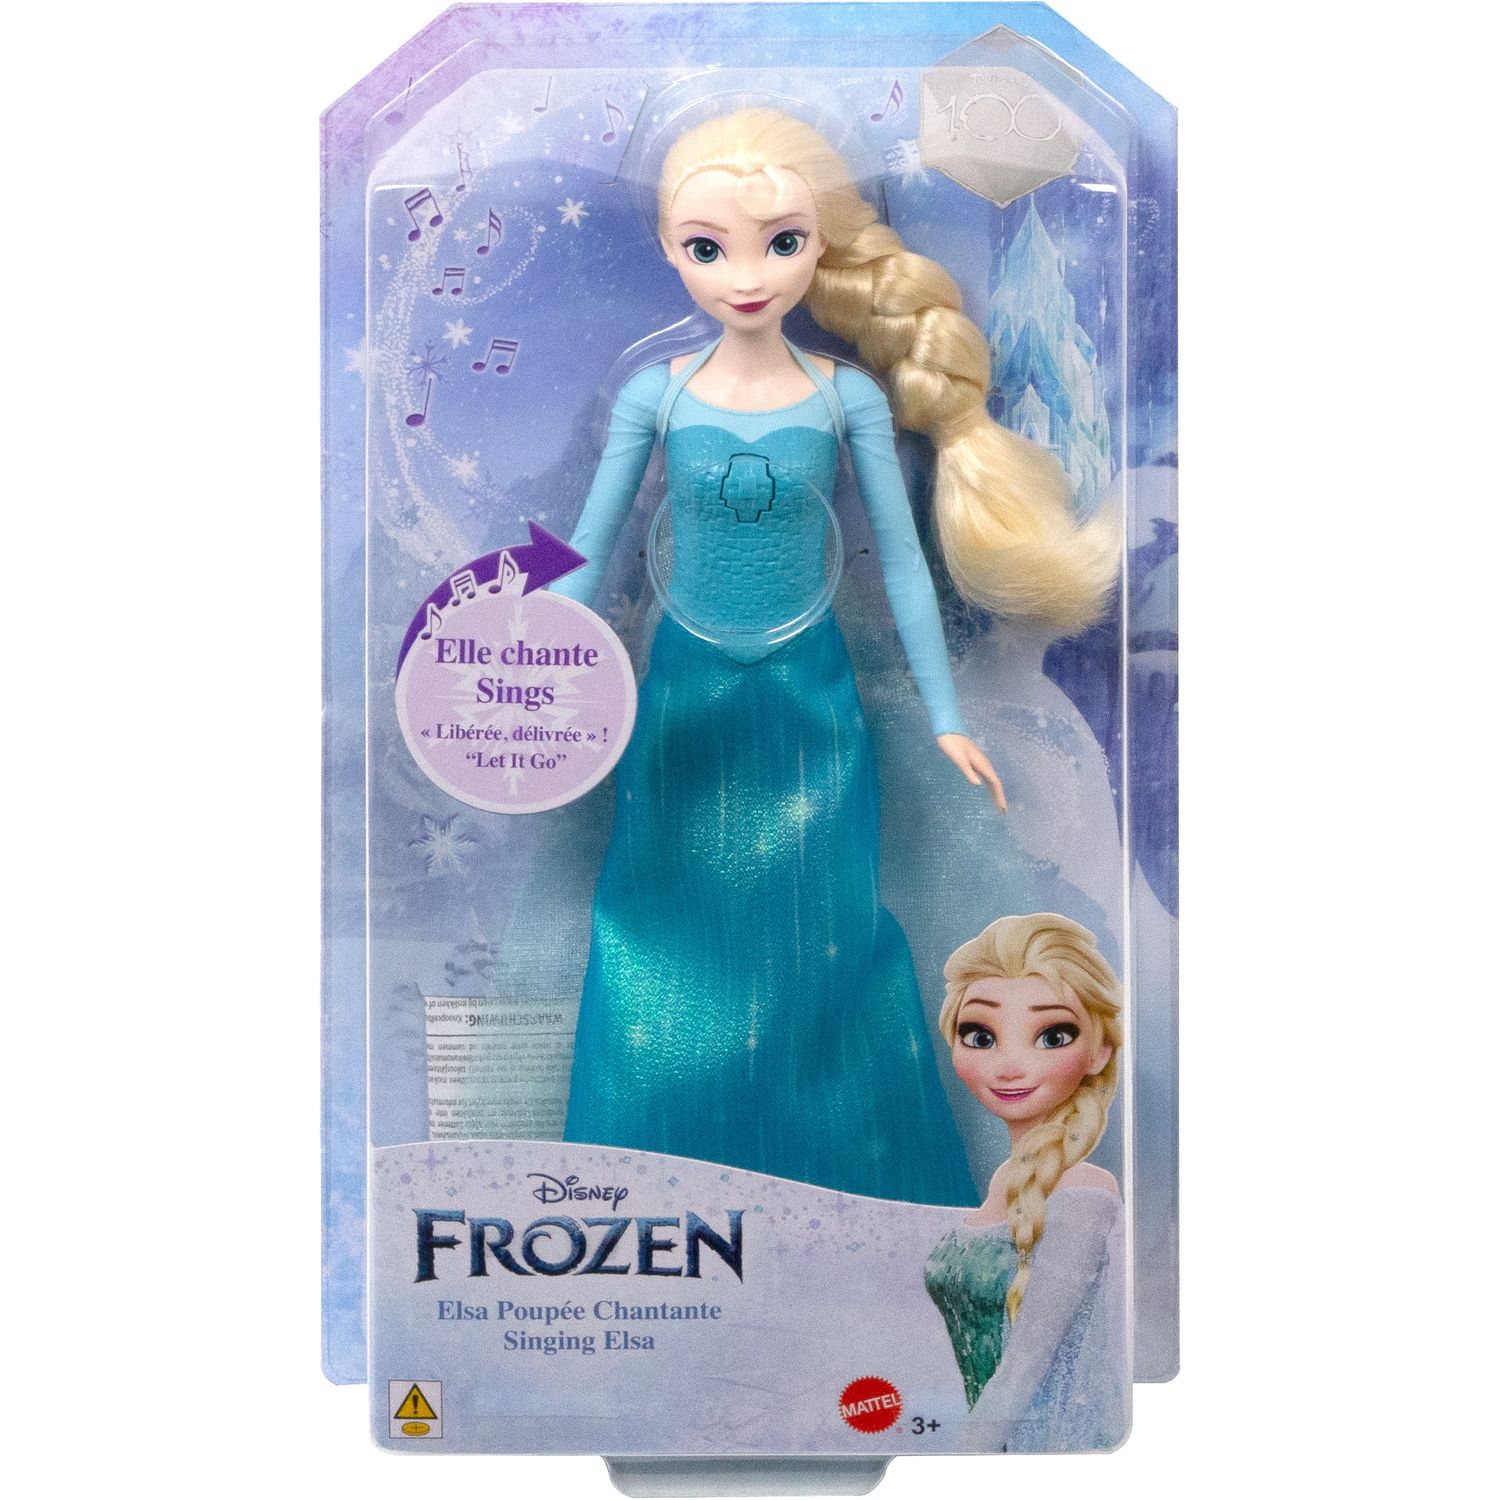 Poupée Elsa reine des neiges 1 chantante let it go 35 cm Disney